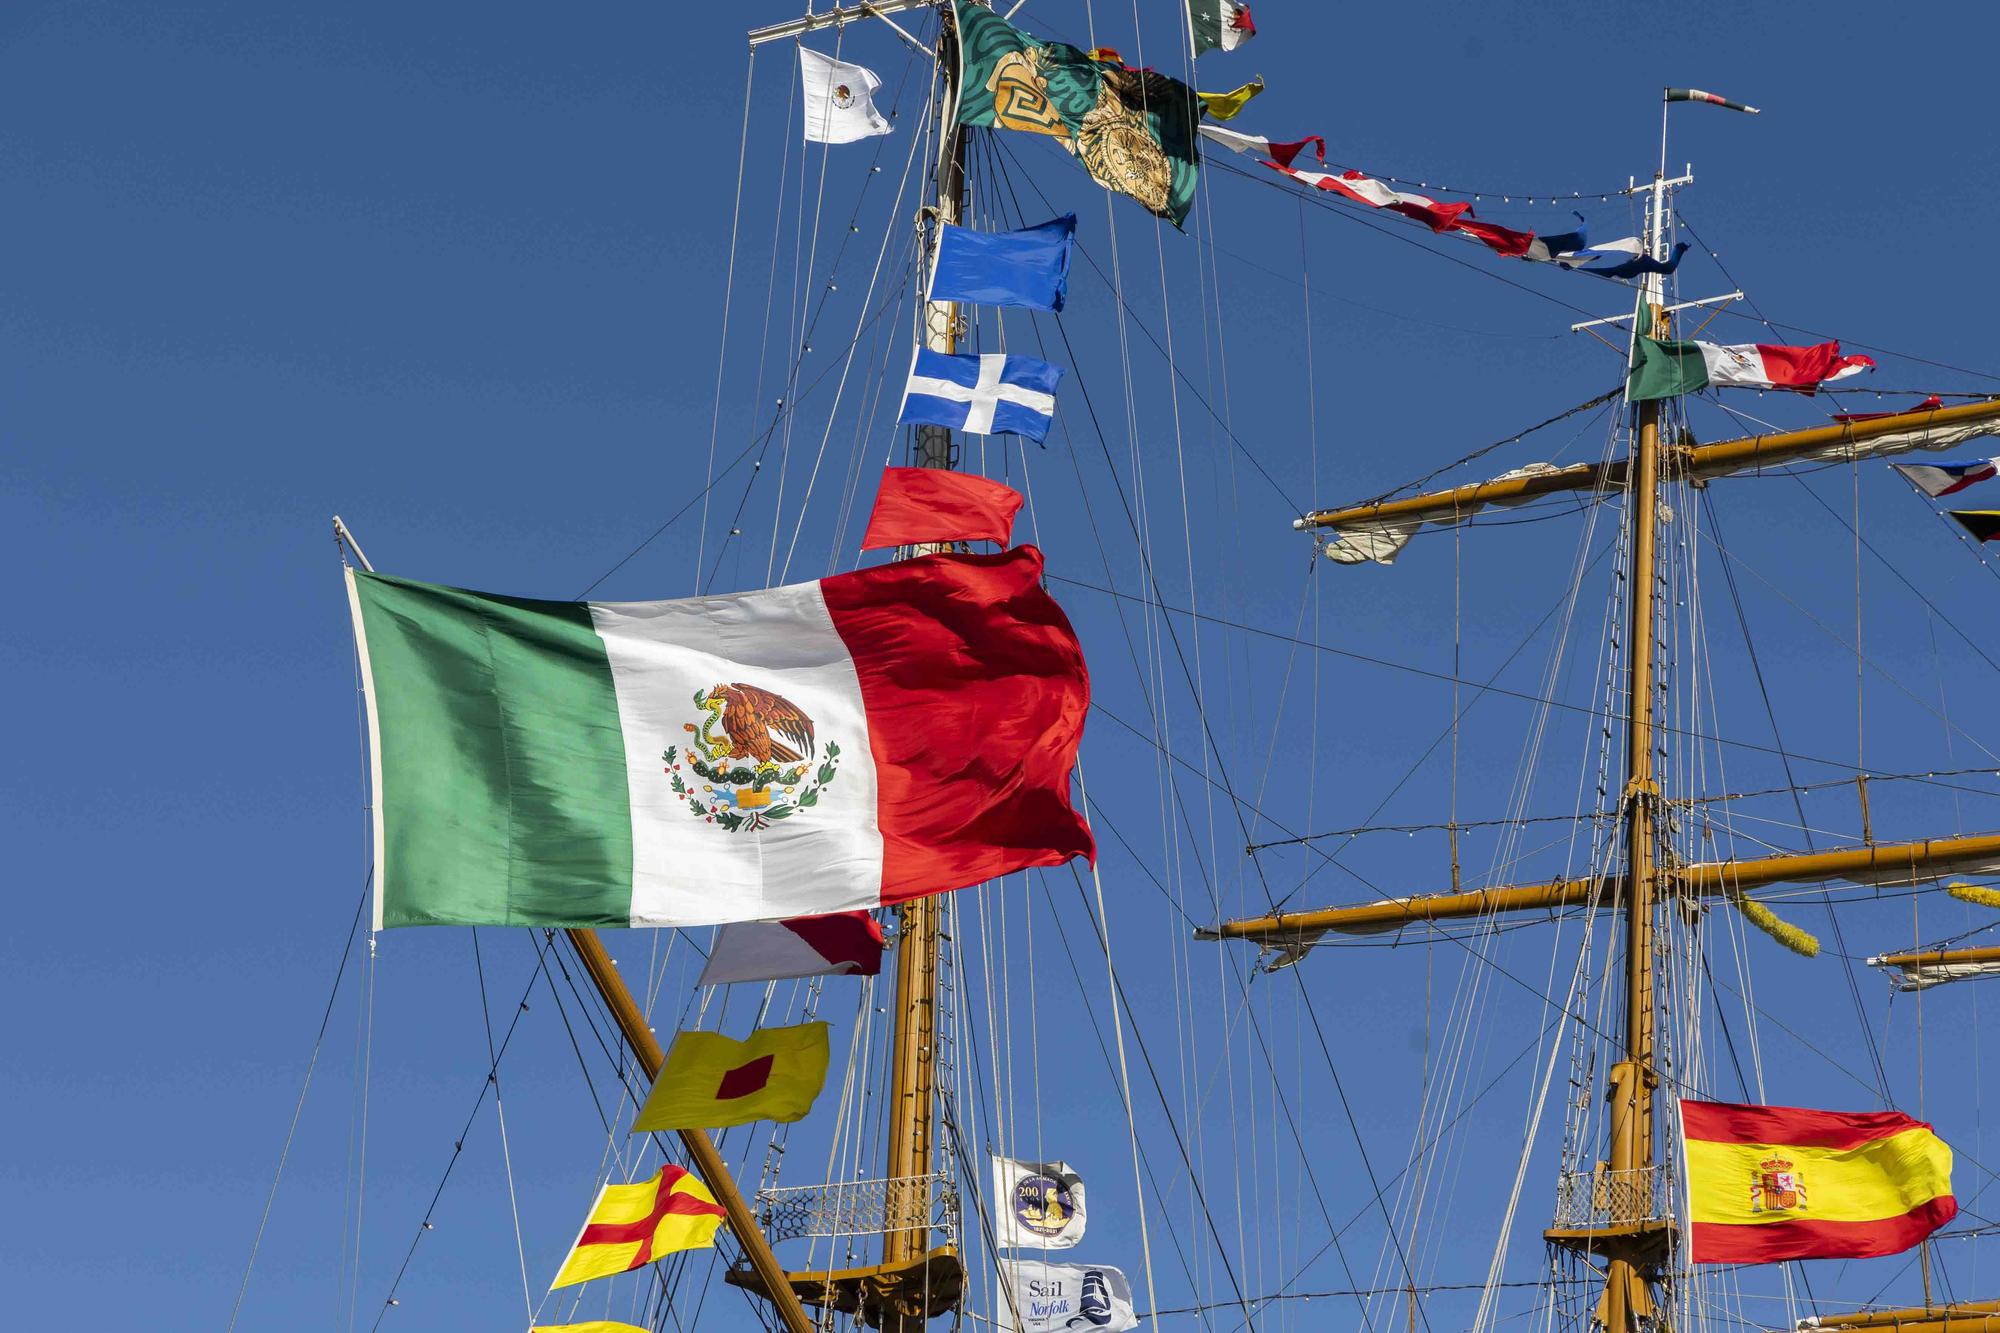 Así es el buque de la armada mexicana atracado en La Marina